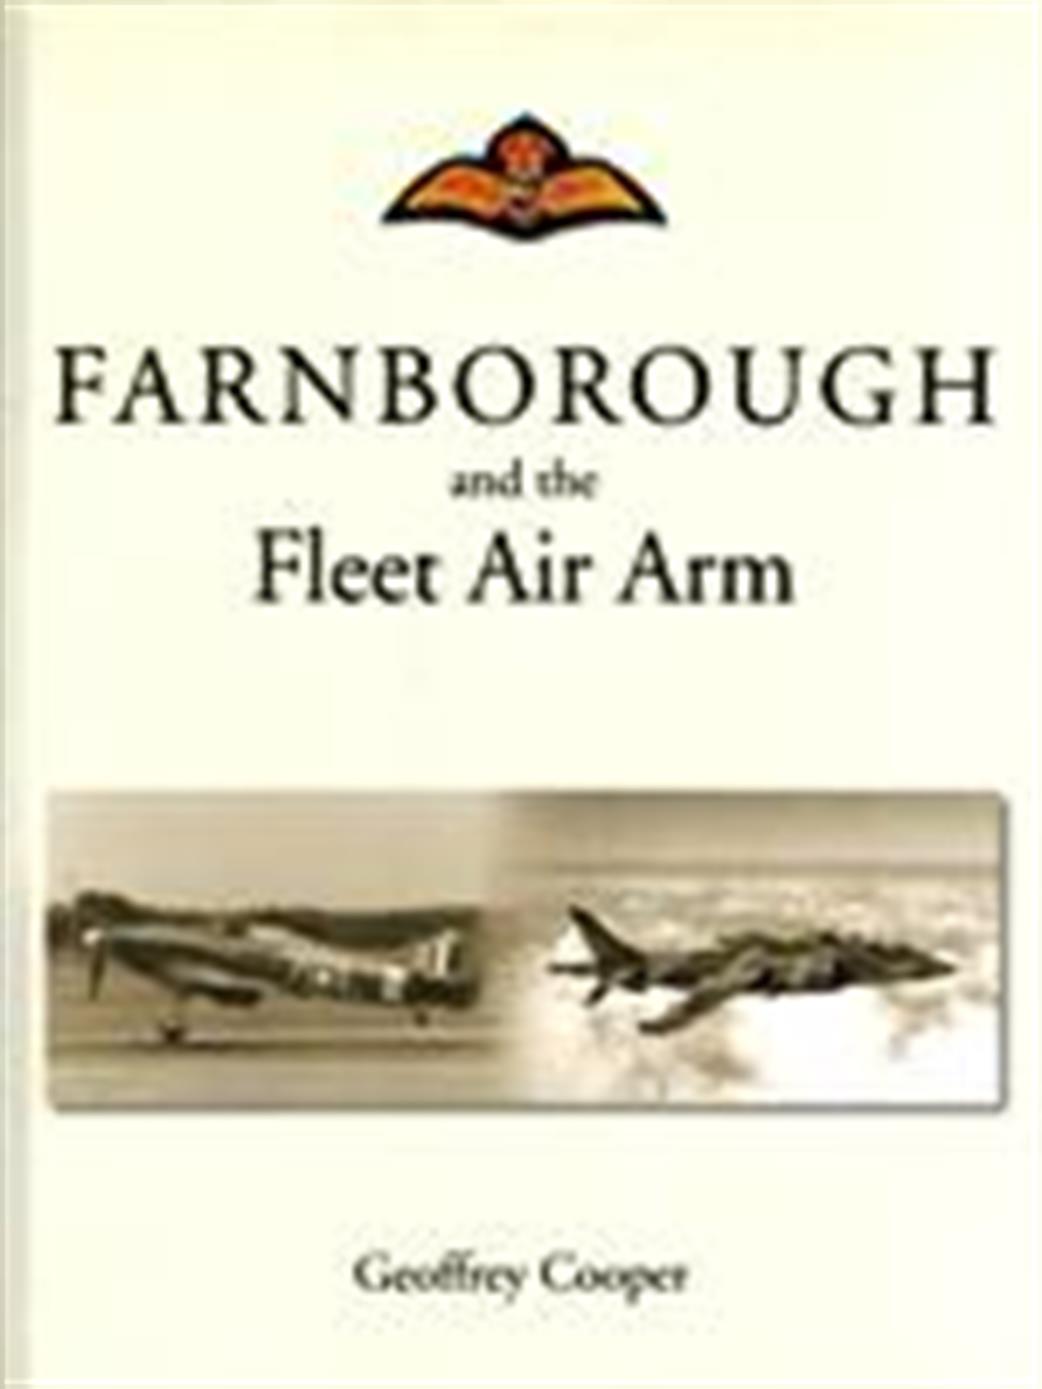 Ian Allan Publishing  9781857803068 Farnborough Fleet Air Arm by Geoffrey Cooper